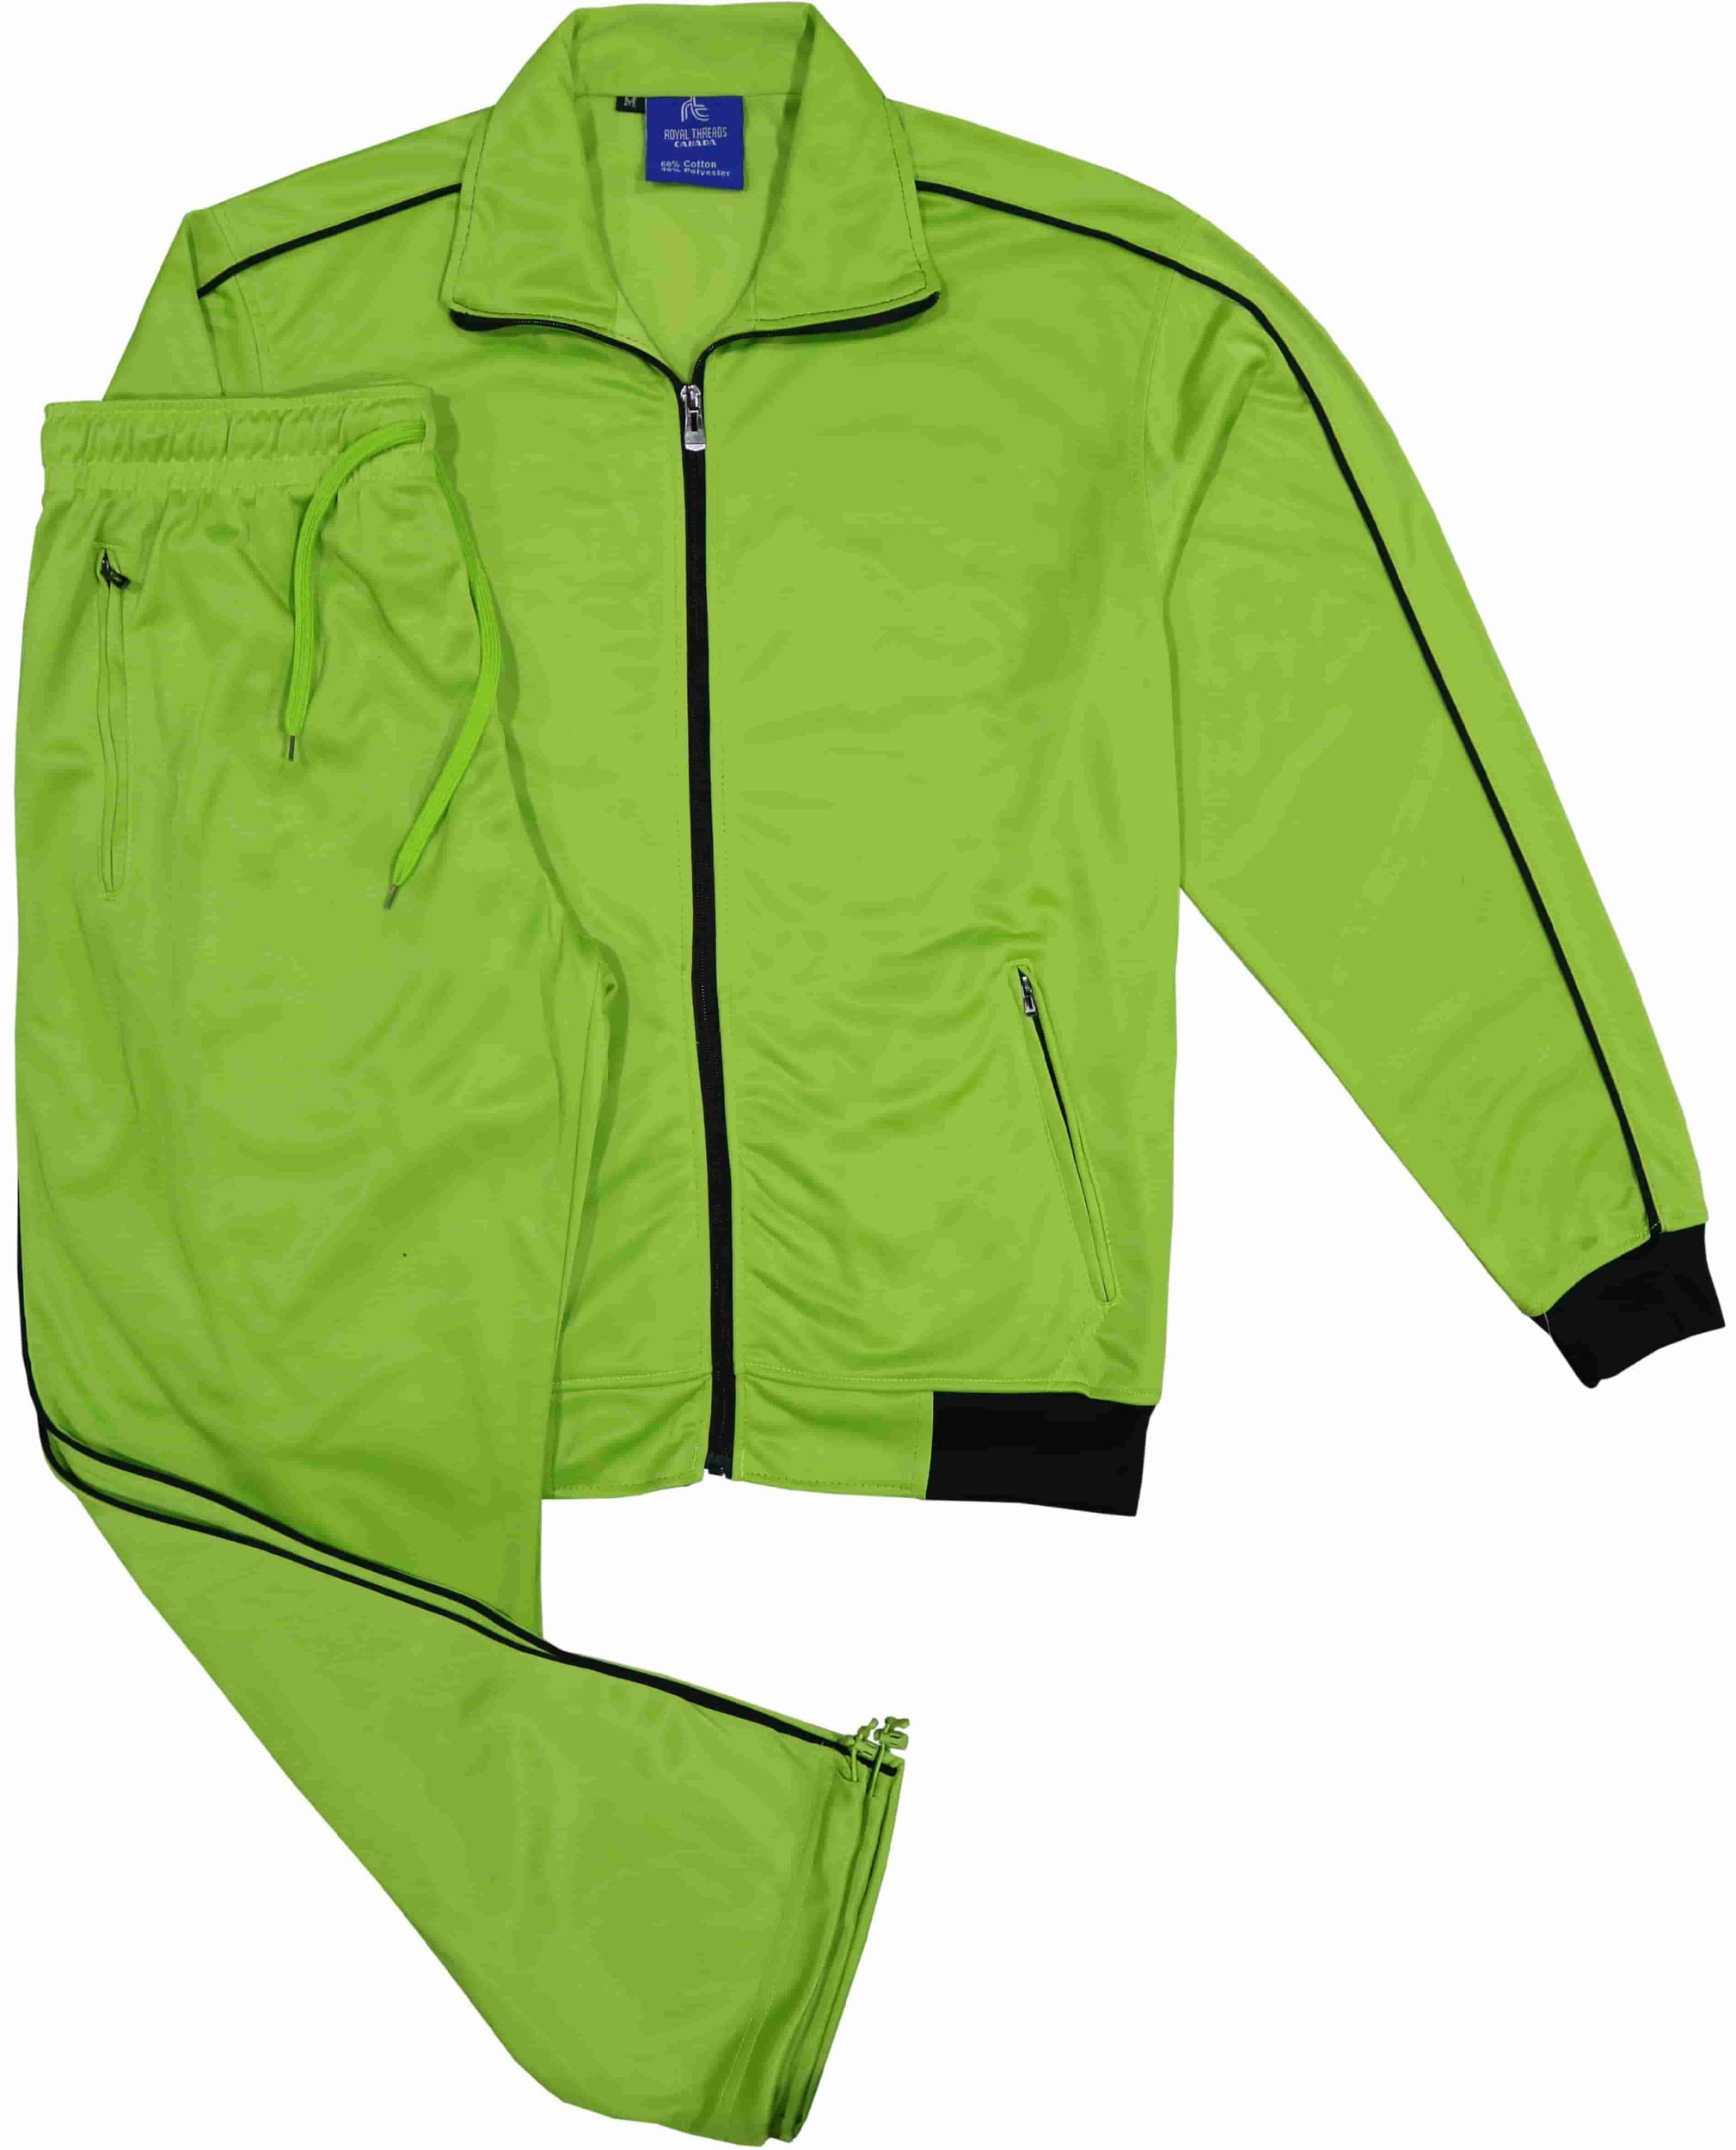 Details about   YSENTO Men's Track Suits 2 Pieces Jacket & Pants Warm Up Jogging Suits Sweatsuit 